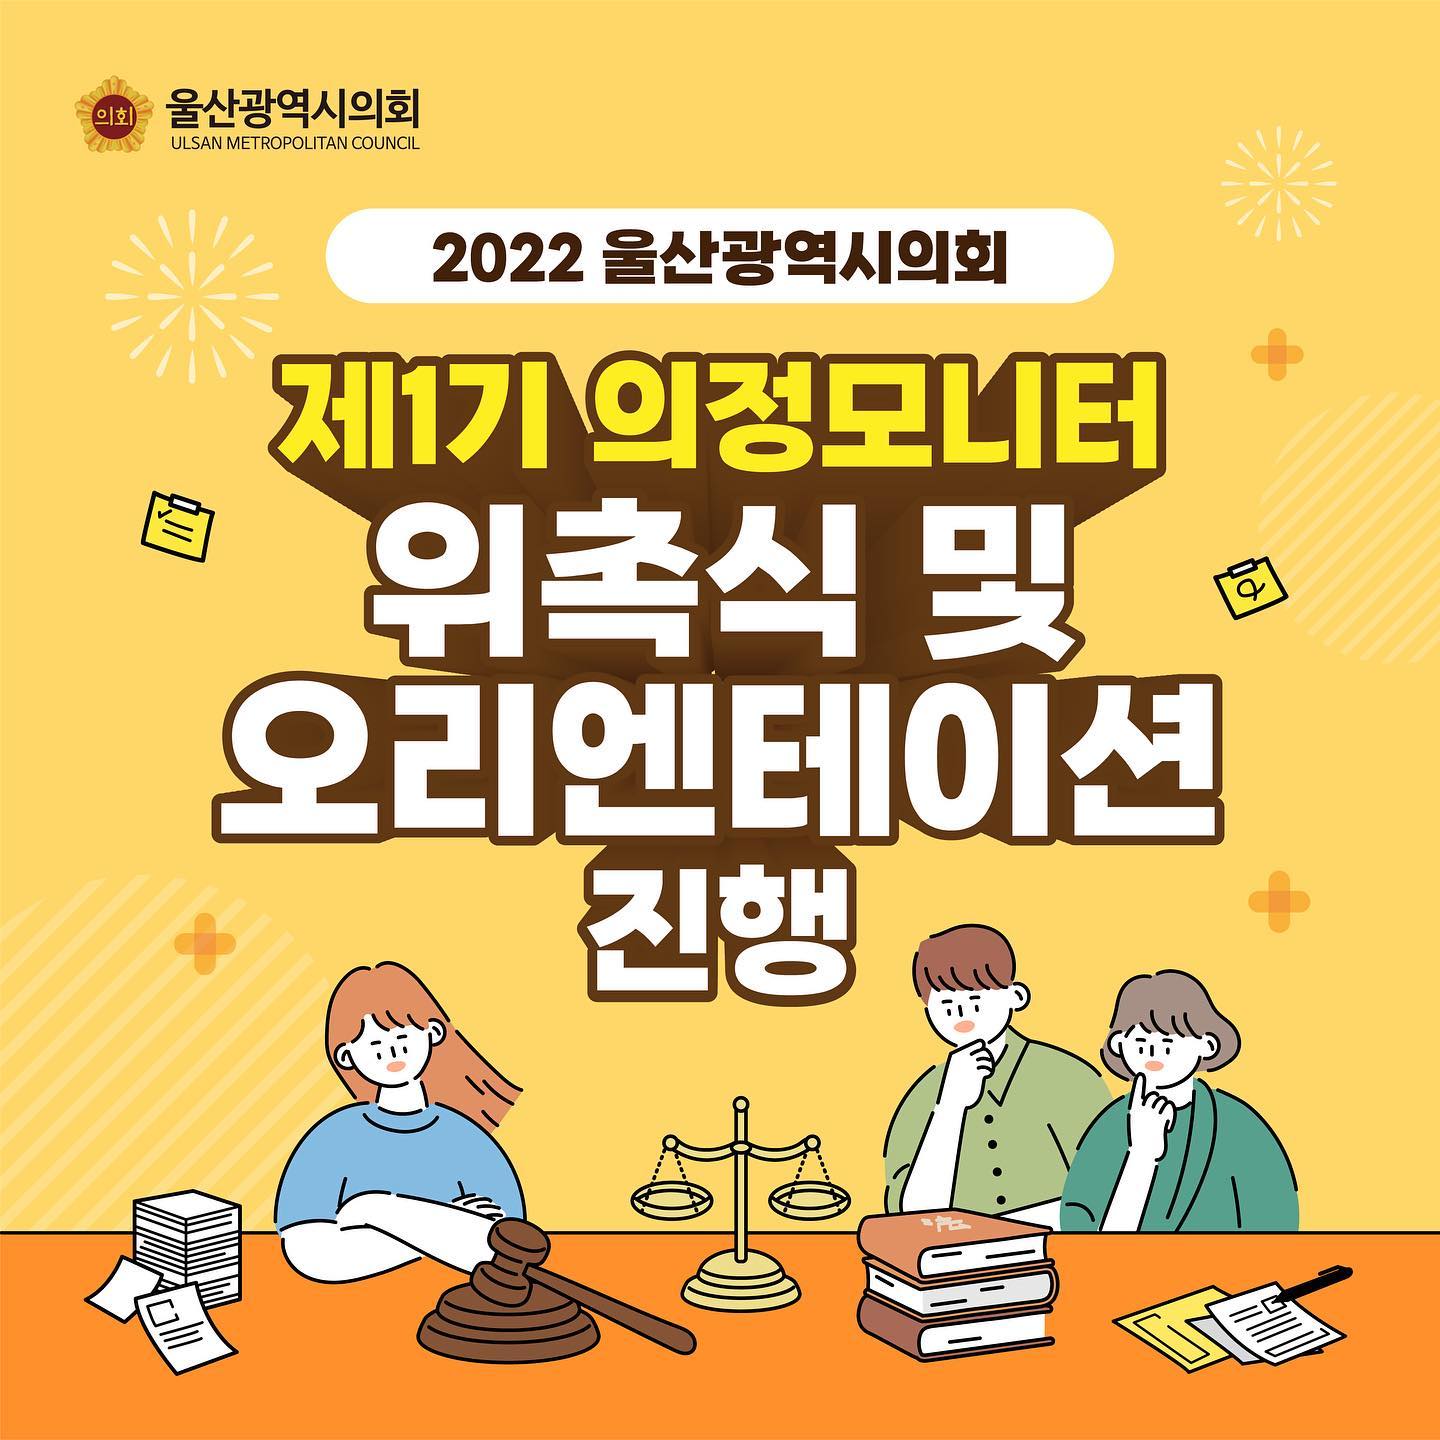 2022 울산광역시의회 
제1기 의정모니터 위촉식 및 오리엔테이션 진행